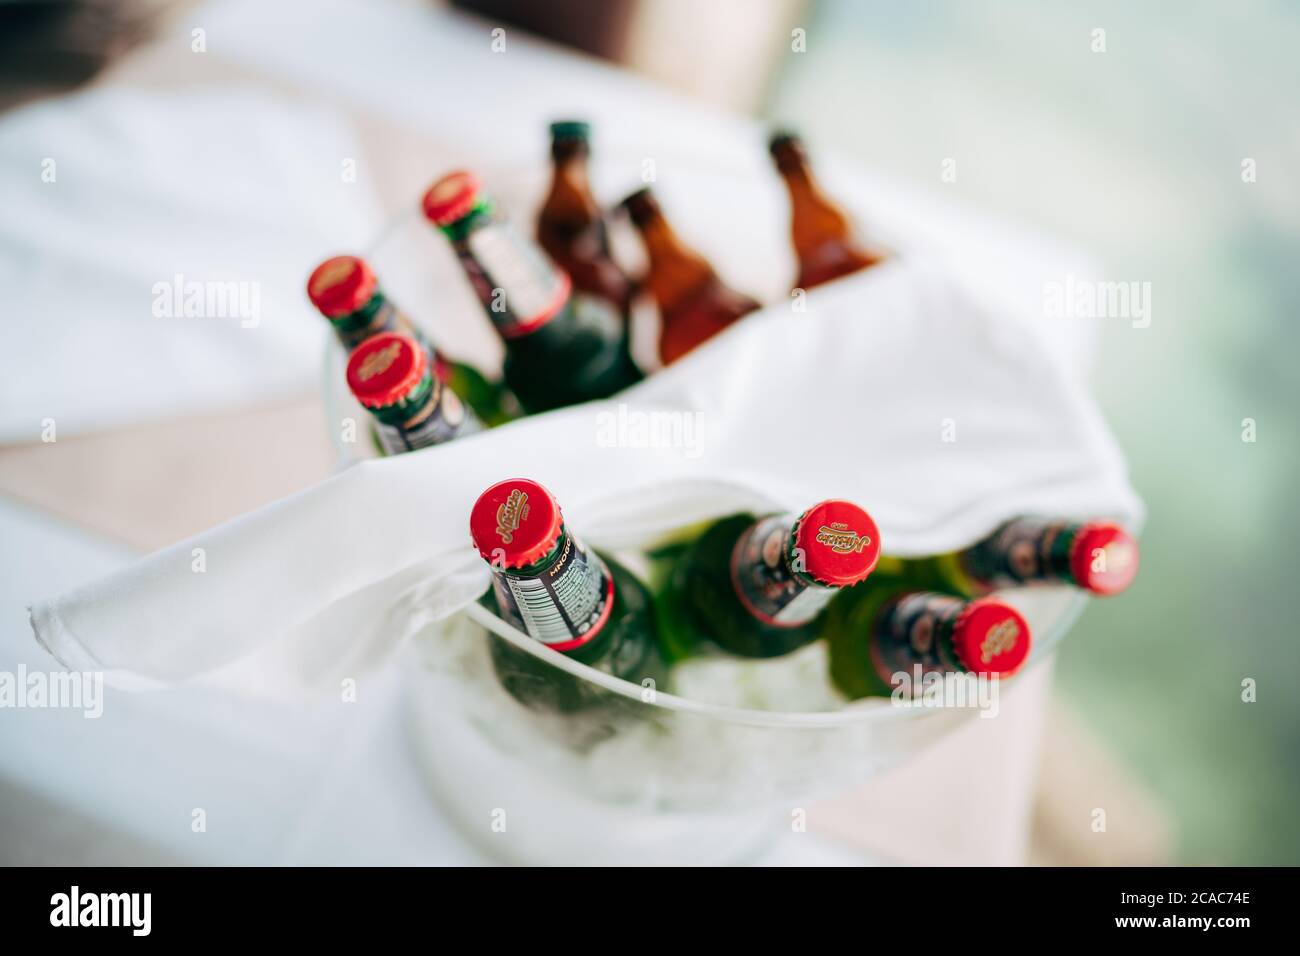 Un seau à glace transparent avec des bouteilles pleines de bière claire et foncée et une serviette blanche sur le dessus. Banque D'Images